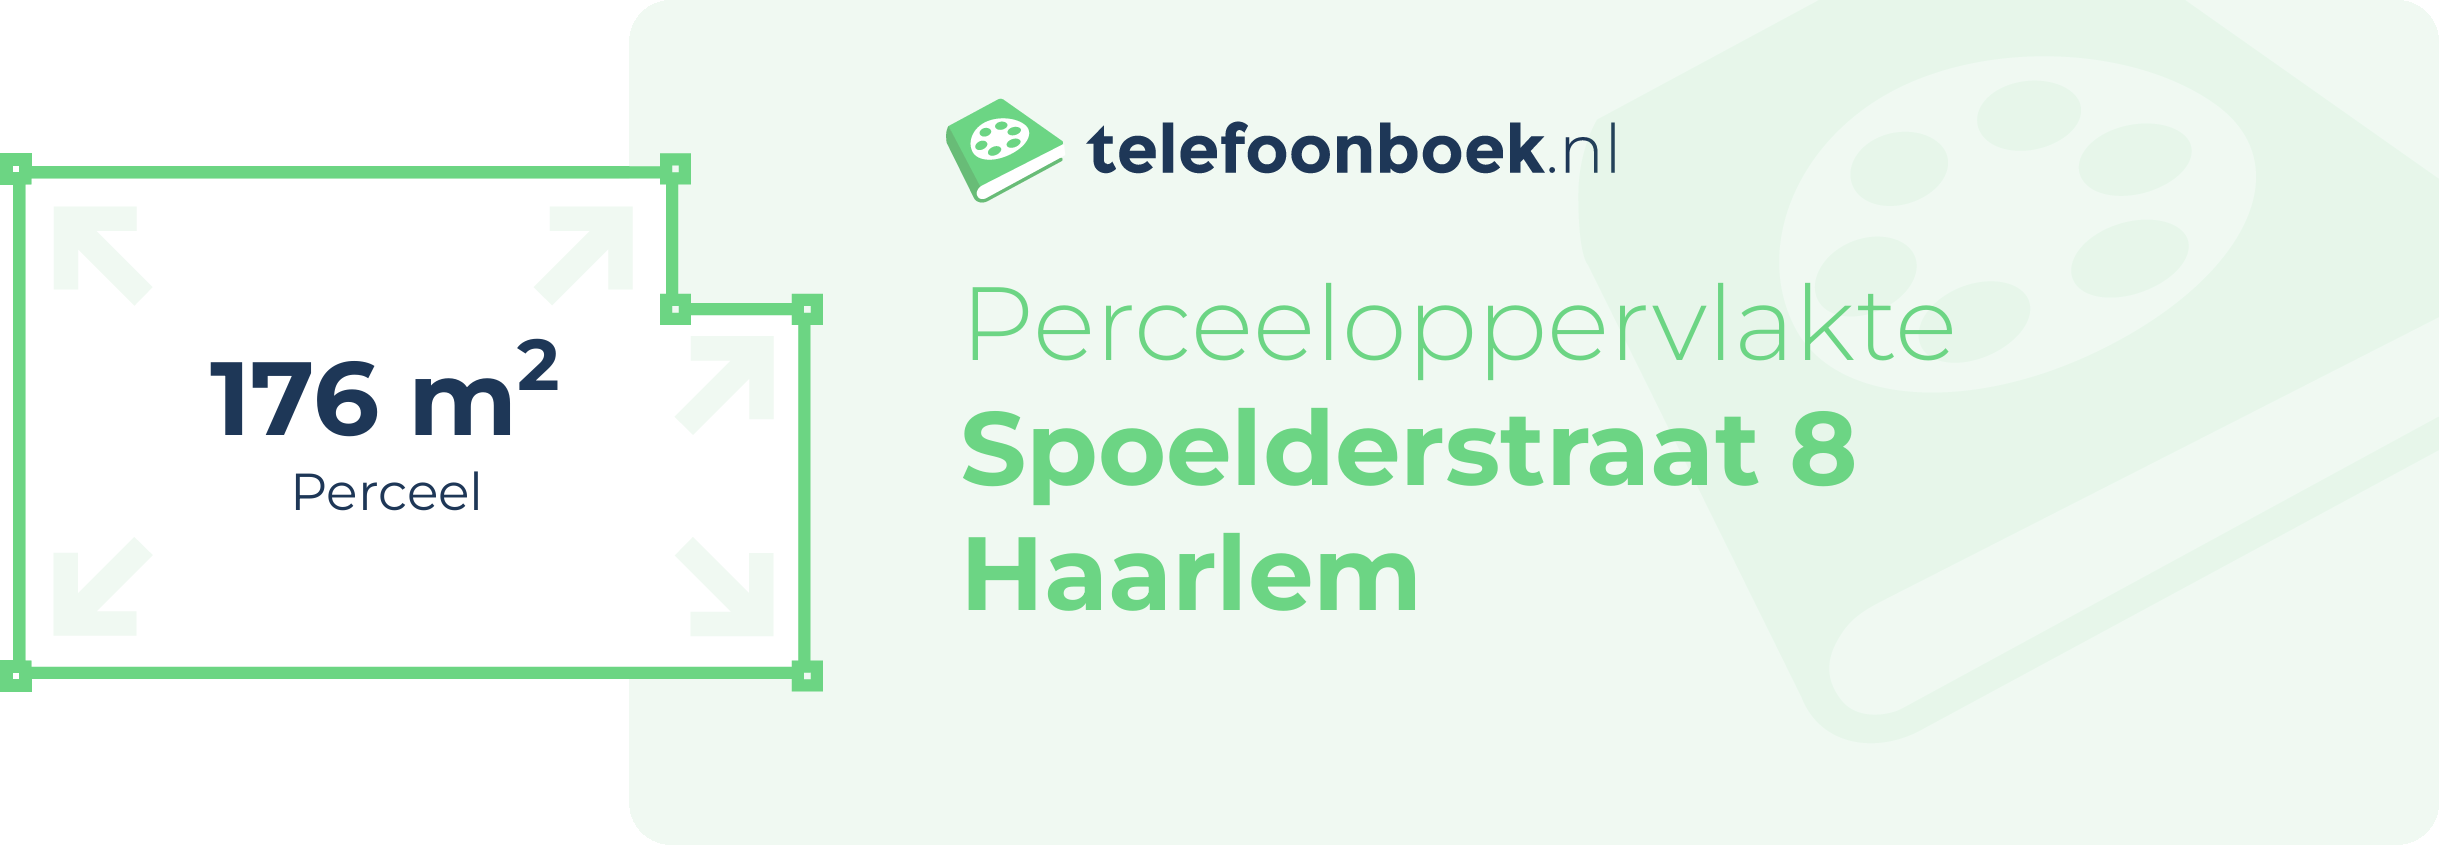 Perceeloppervlakte Spoelderstraat 8 Haarlem